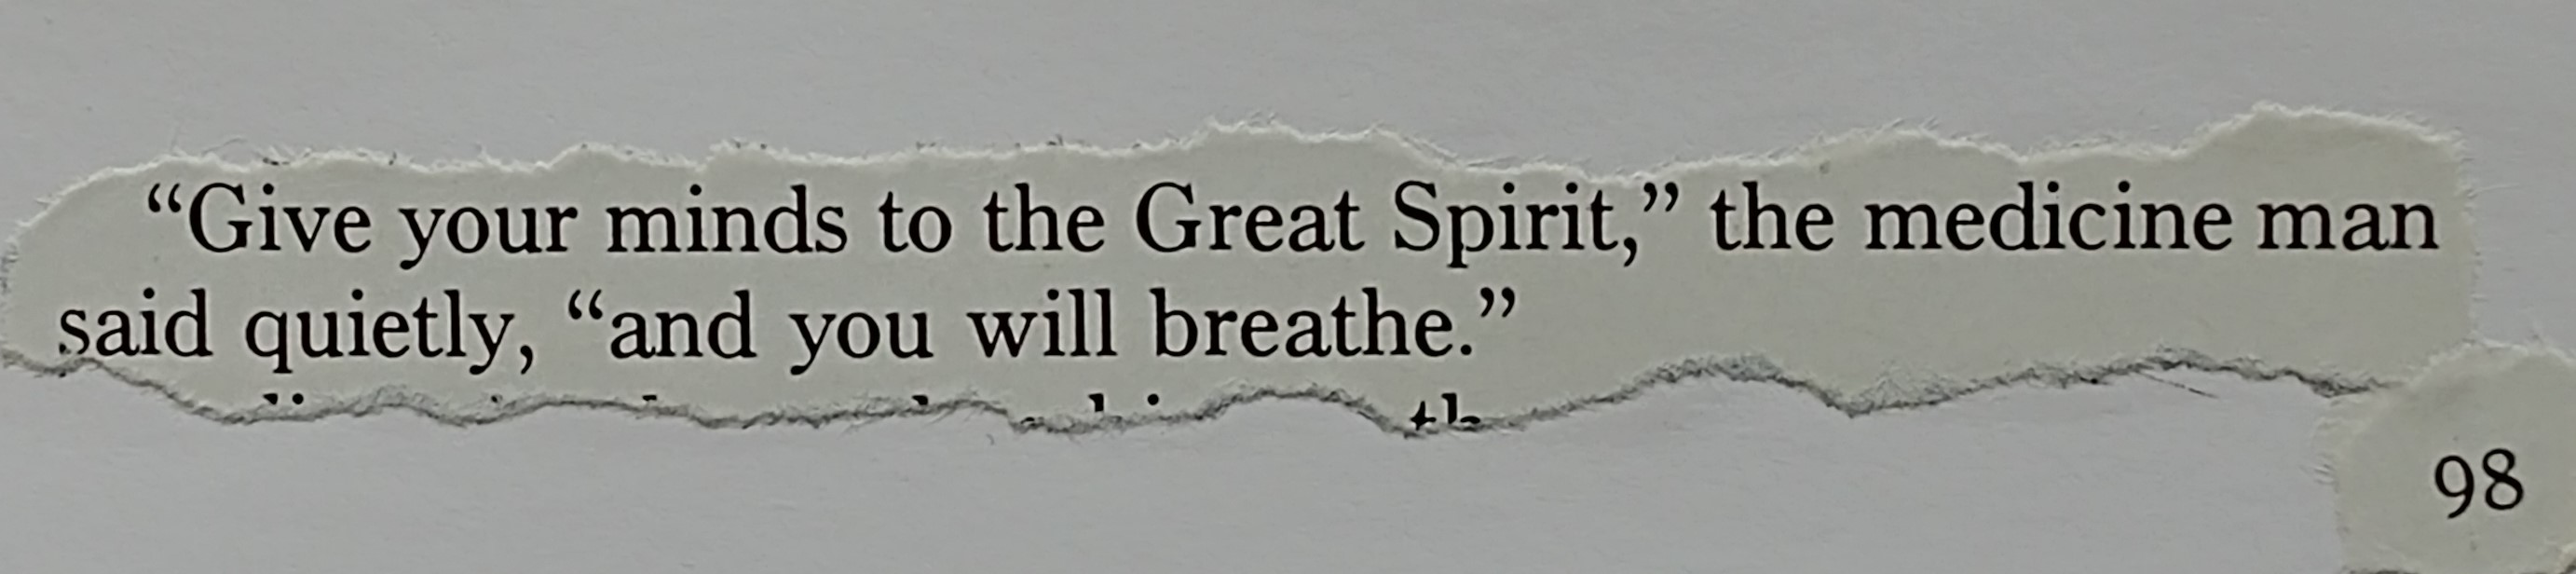 Great Spirit quote